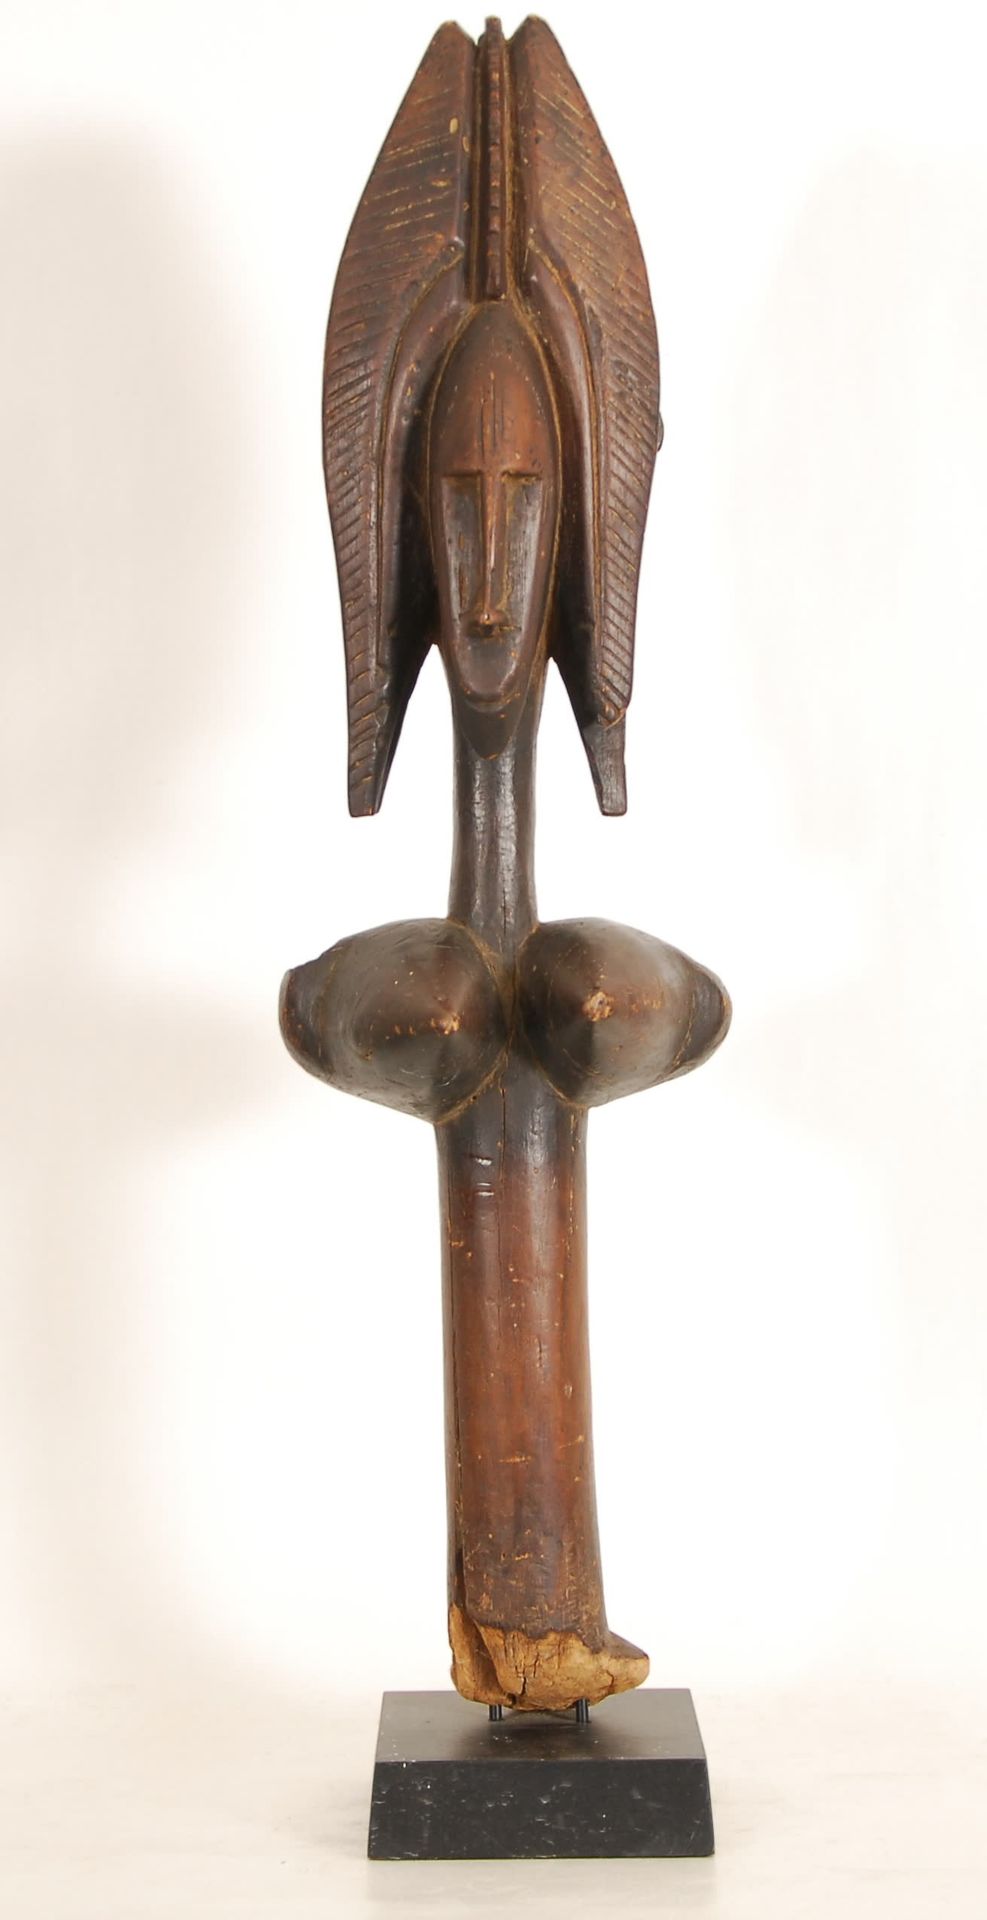 Afrique - Africa 班巴拉木偶
木雕，马里。
高82厘米。
出处：前J.-Y. Coué收藏，昂热